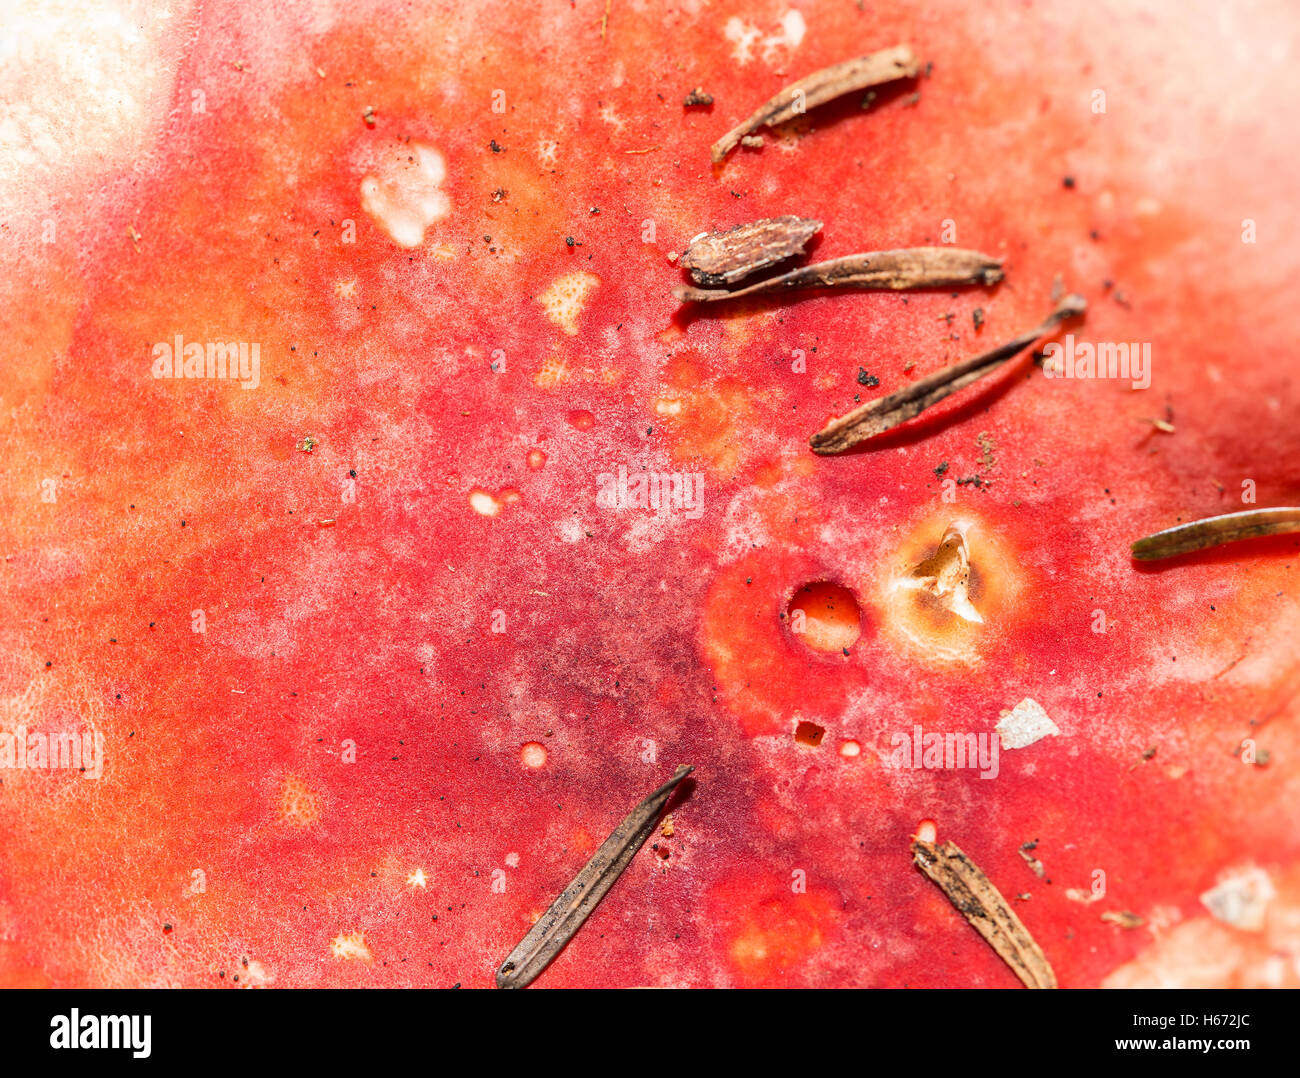 Fungo rosso in alto sullo sfondo di texture con alcuni aghi. Foto Stock